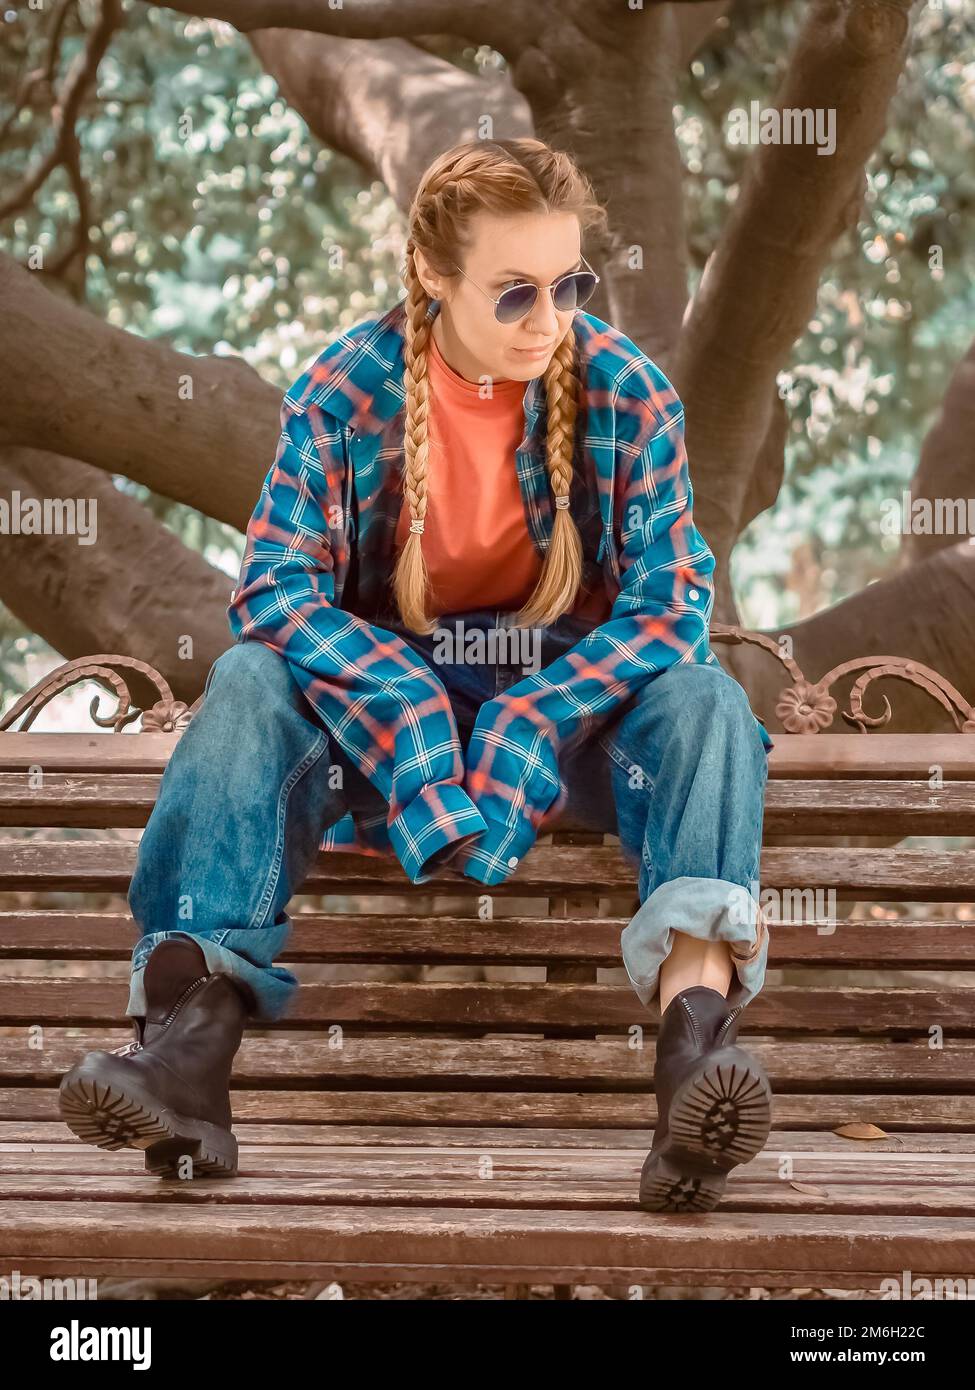 Una chica con coletas en una camisa a cuadros con mangas excesivamente largas, jeans oversize y zapatos ásperos se sienta en un banco del parque. Foto de stock